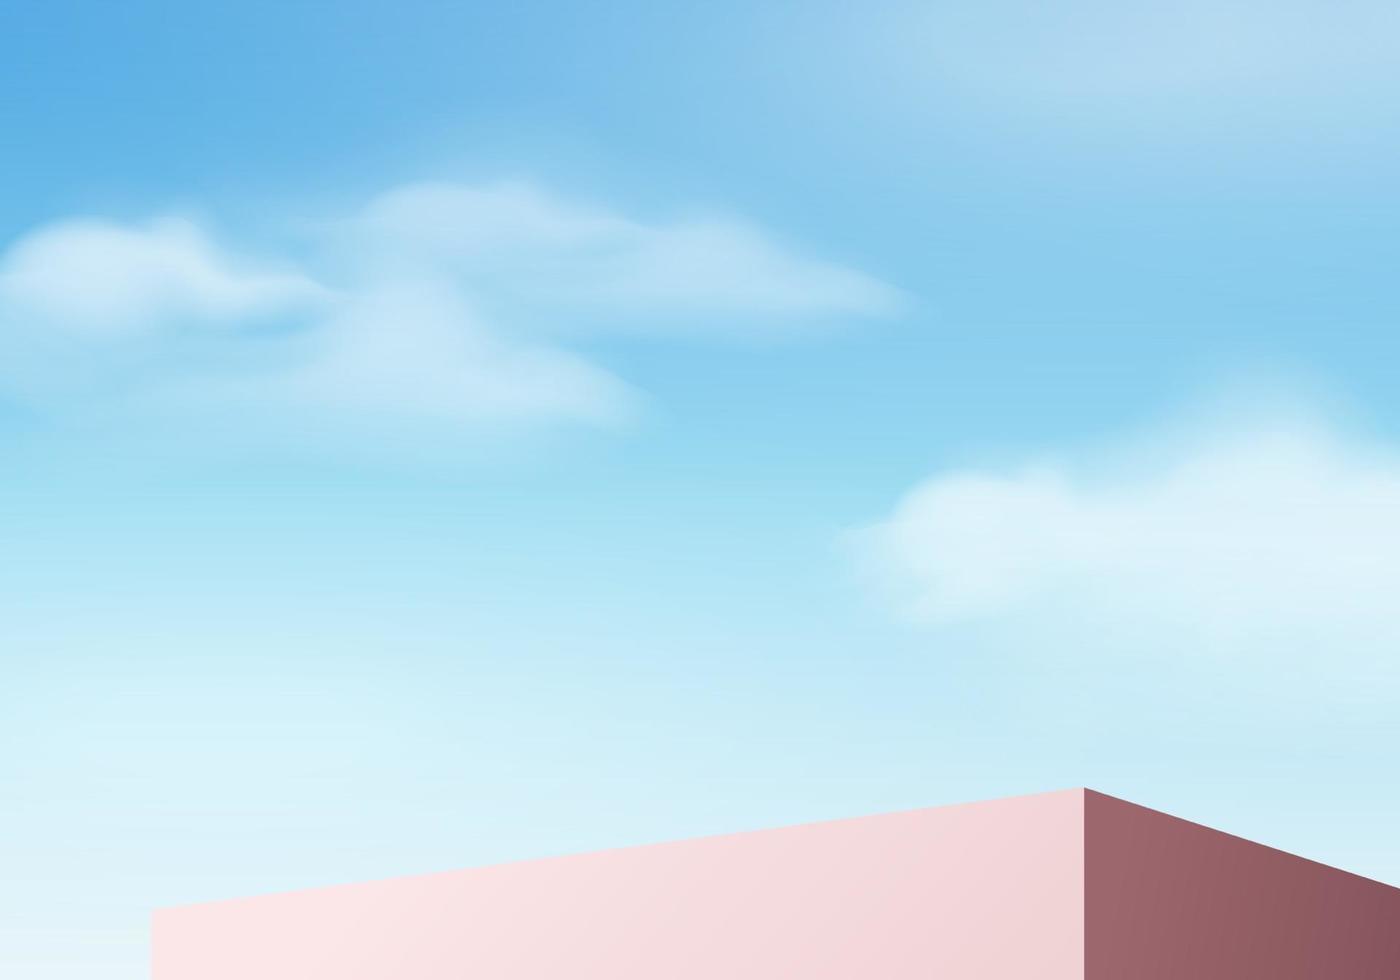 Hintergrundvektor 3d blau Rendering mit Podium und minimale Wolkenszene, minimale Produktanzeige Hintergrund 3d gerenderte geometrische Form Himmel Wolke blau Pastell. Stufe 3d Renderprodukt in Plattform vektor